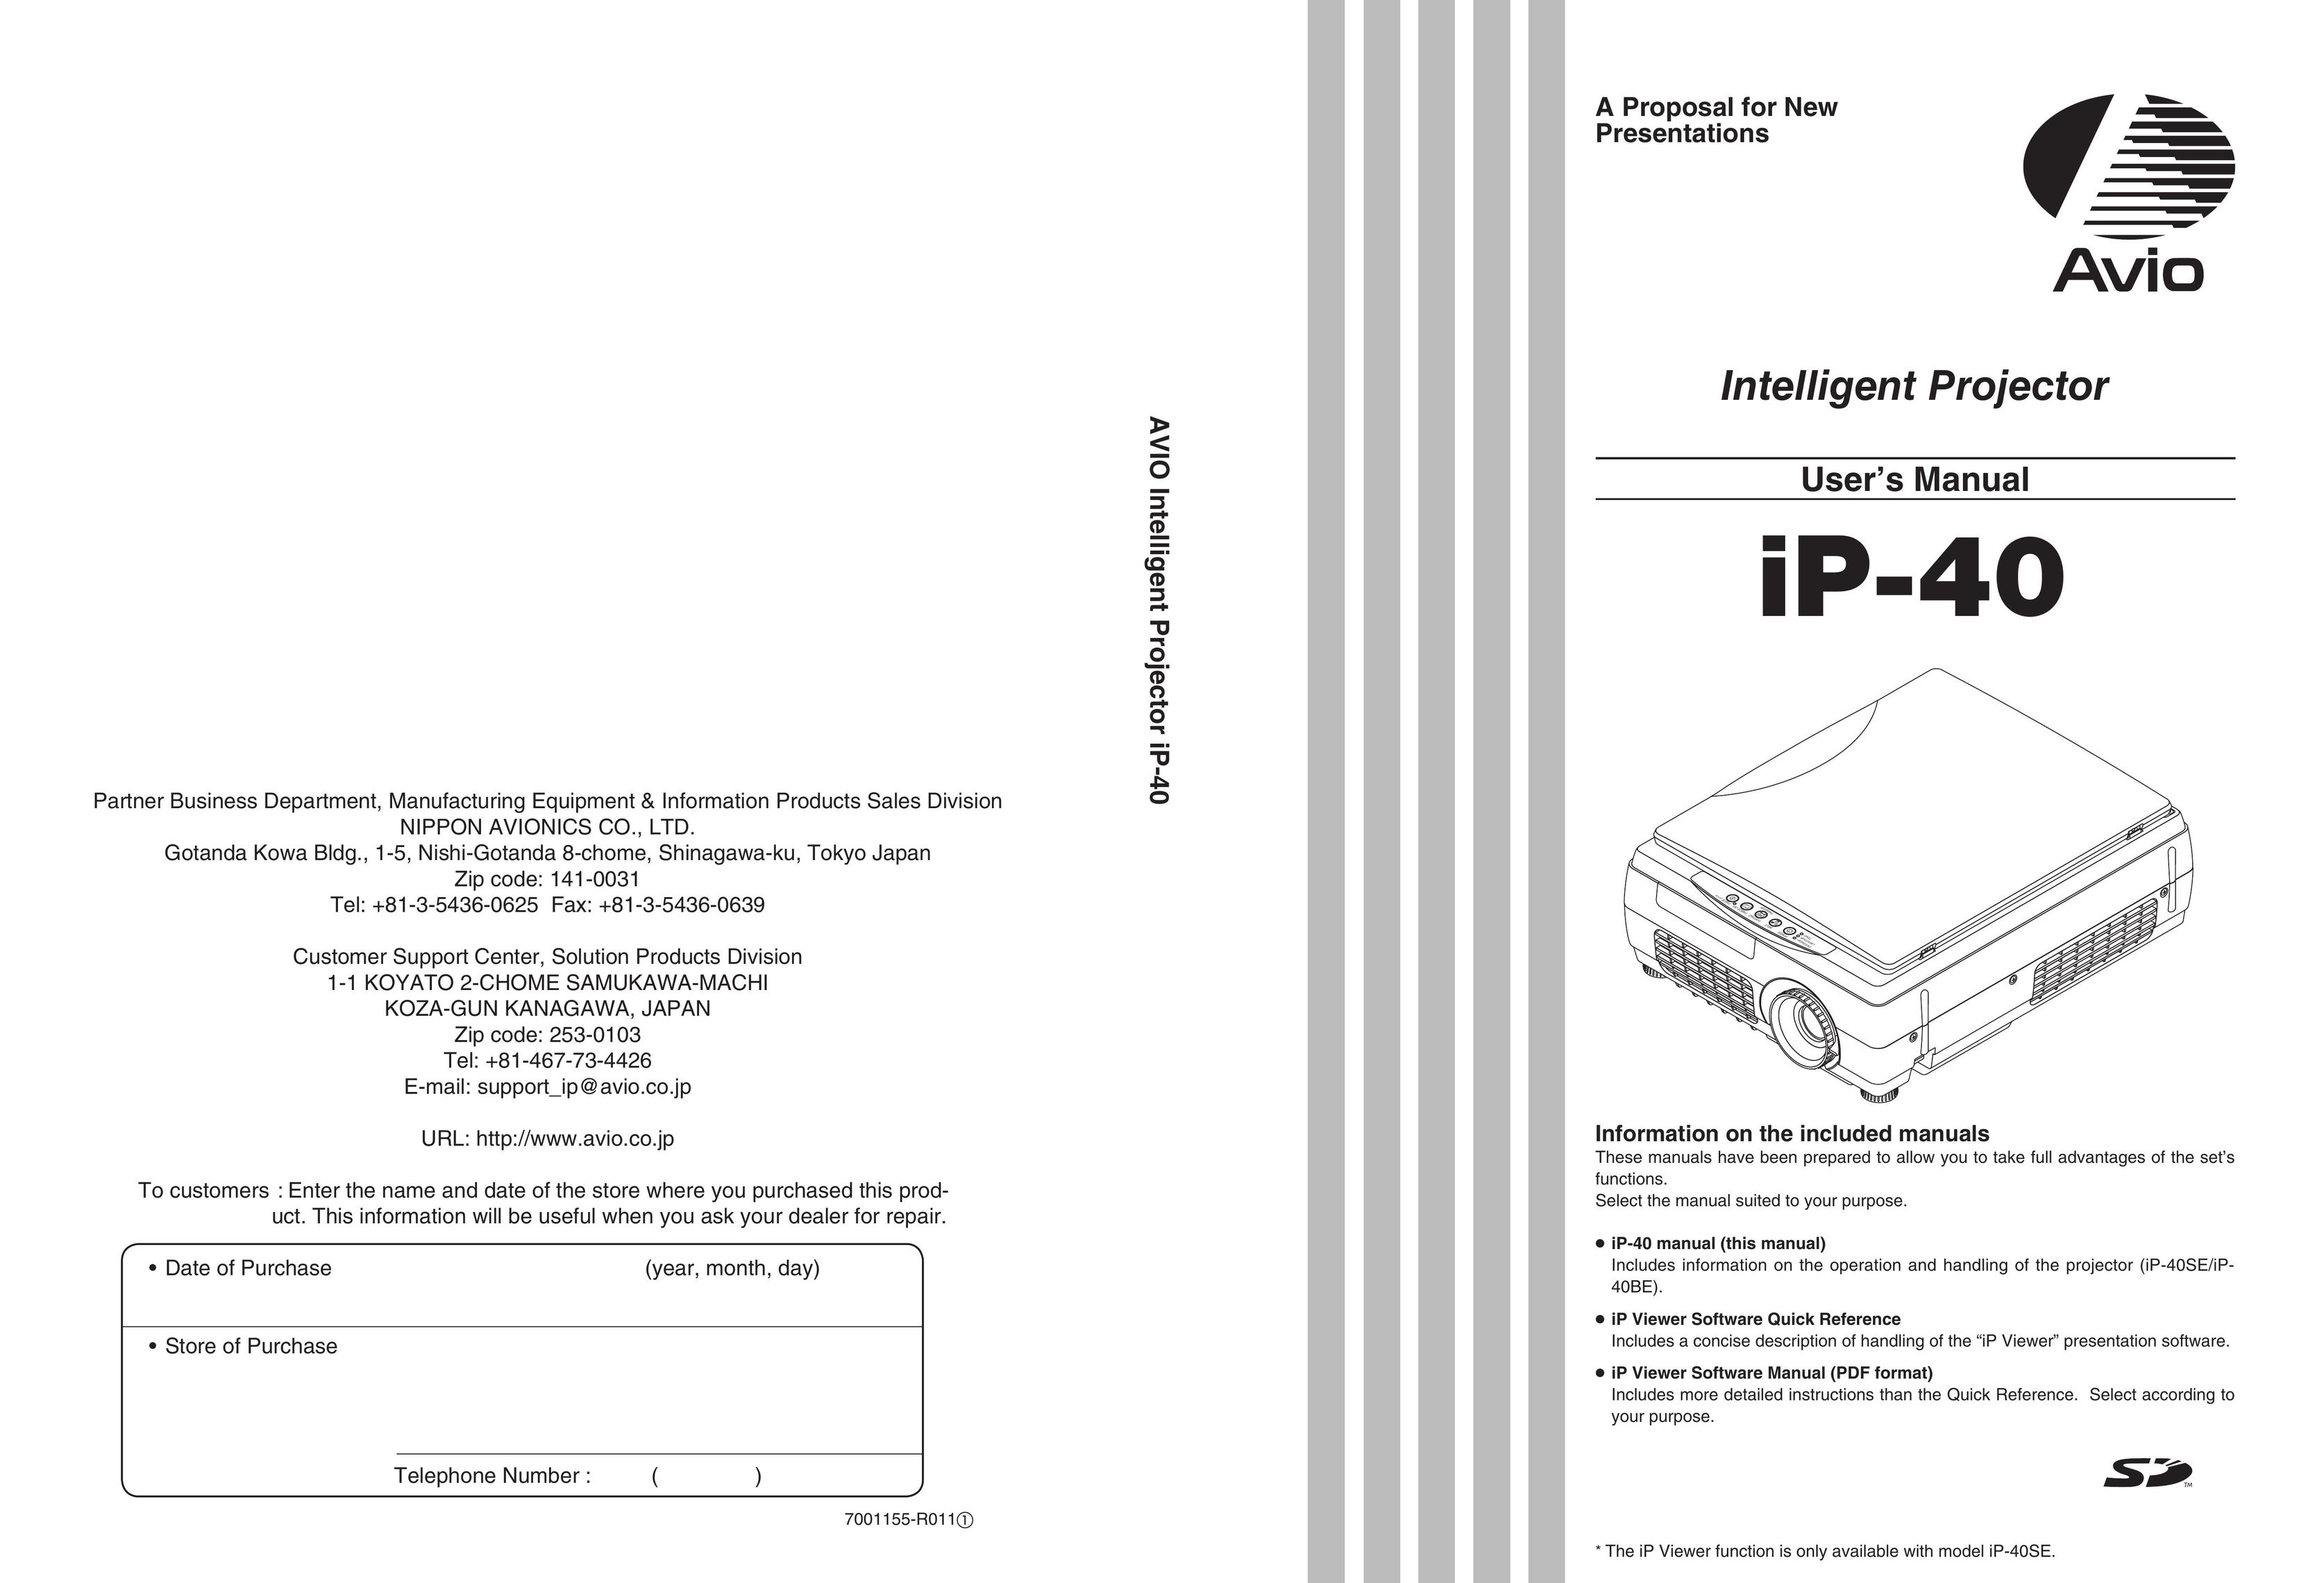 Compaq iP-40 Projector User Manual